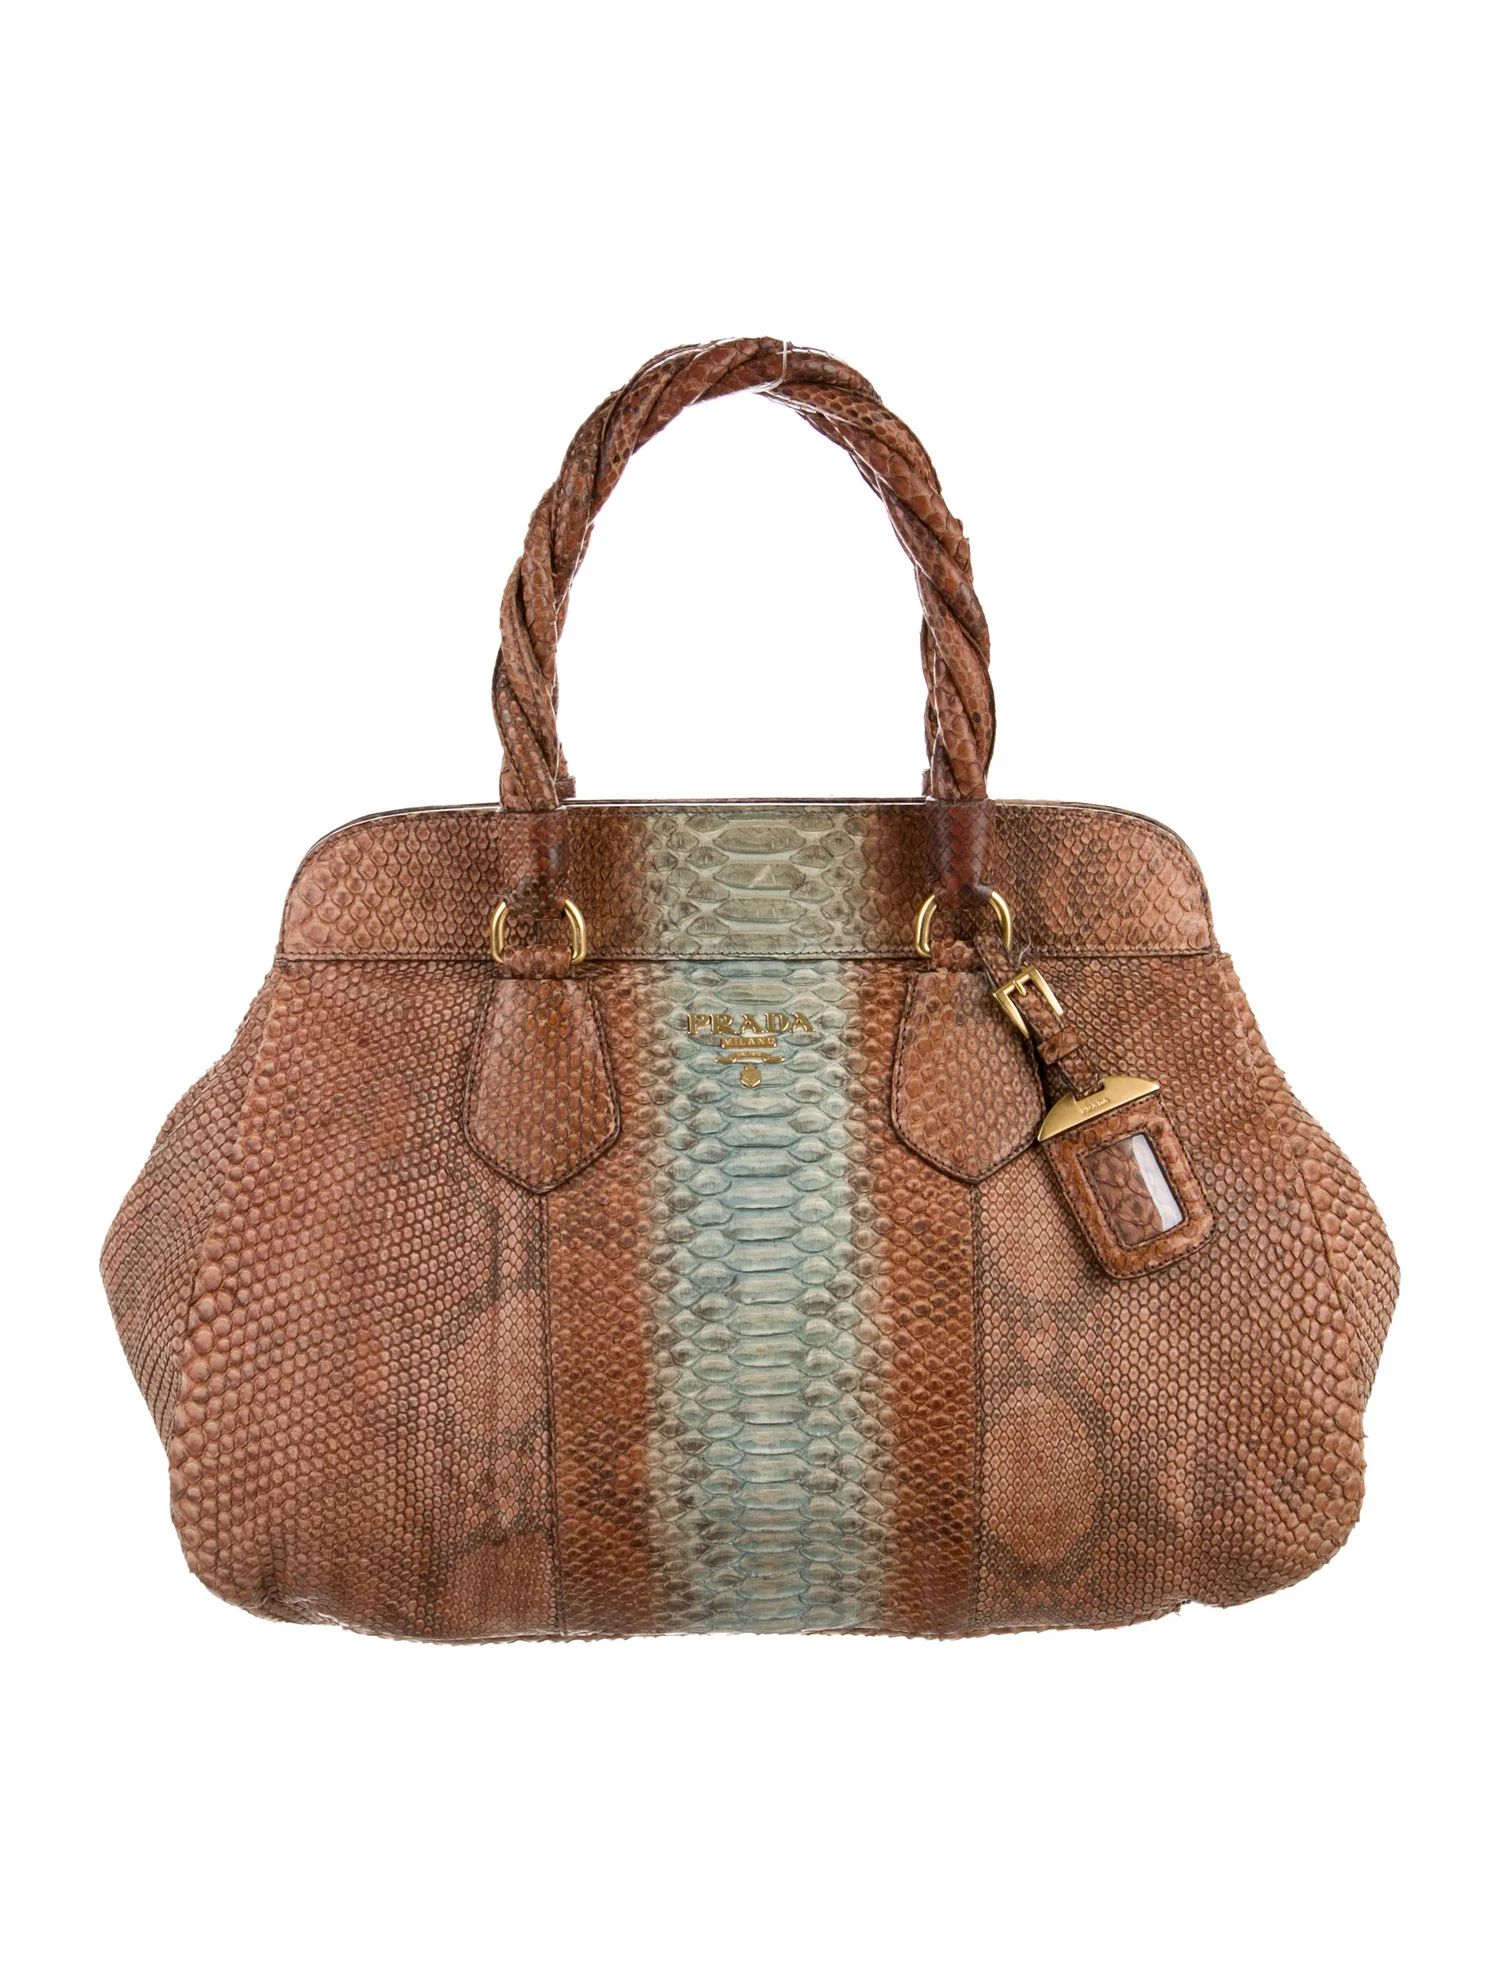 Prada Pitone Handle Bag - Handbags -
          PRA325287 | The RealReal | The RealReal